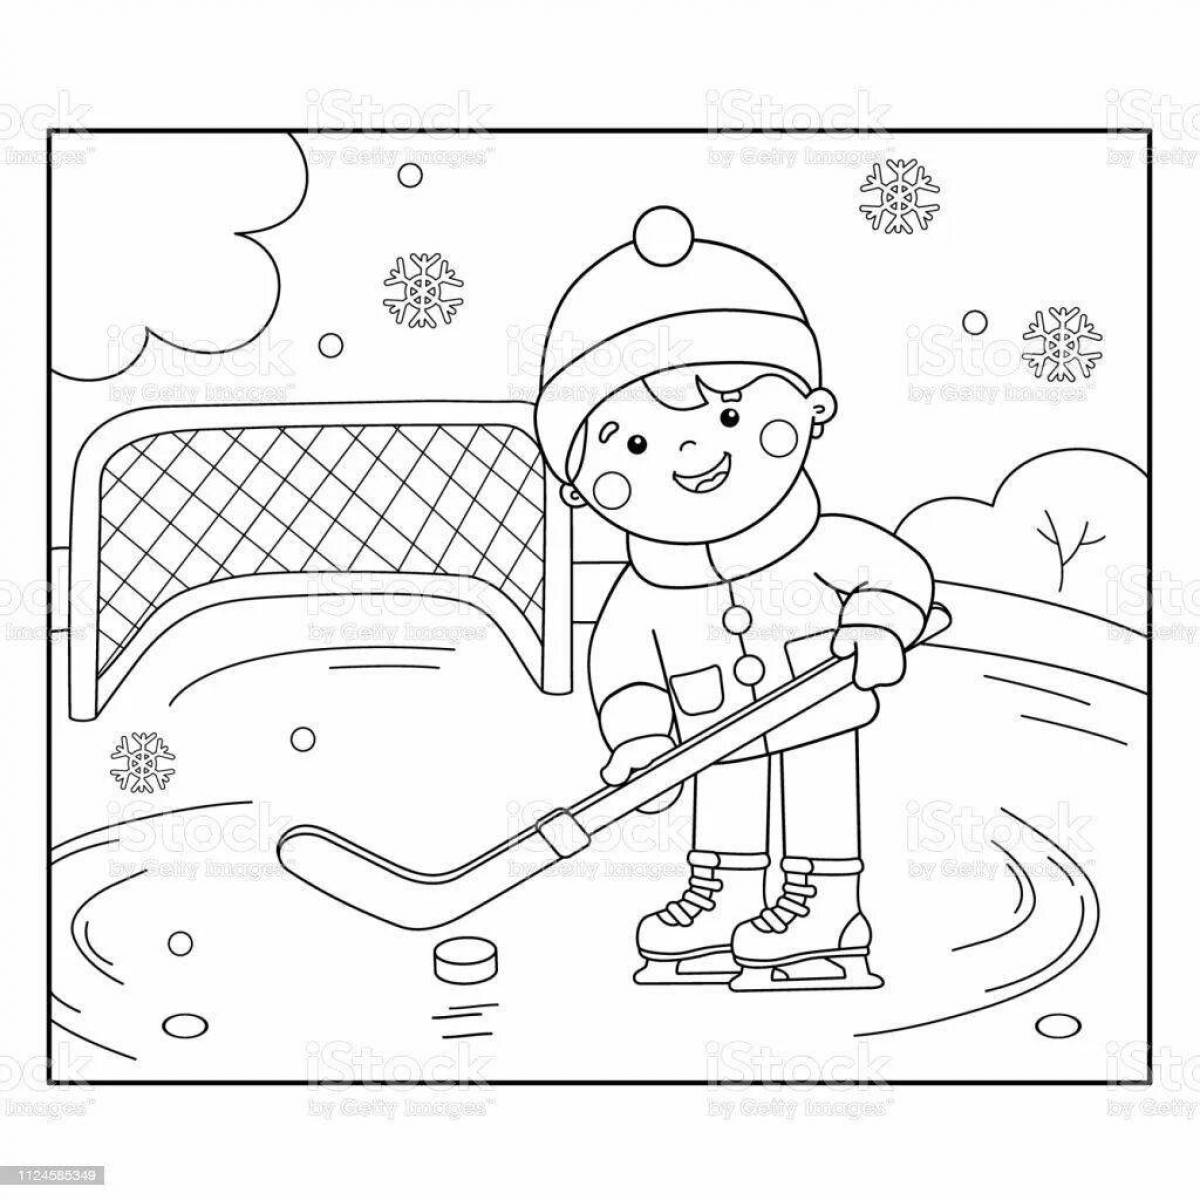 Для детей спорт зимний #5